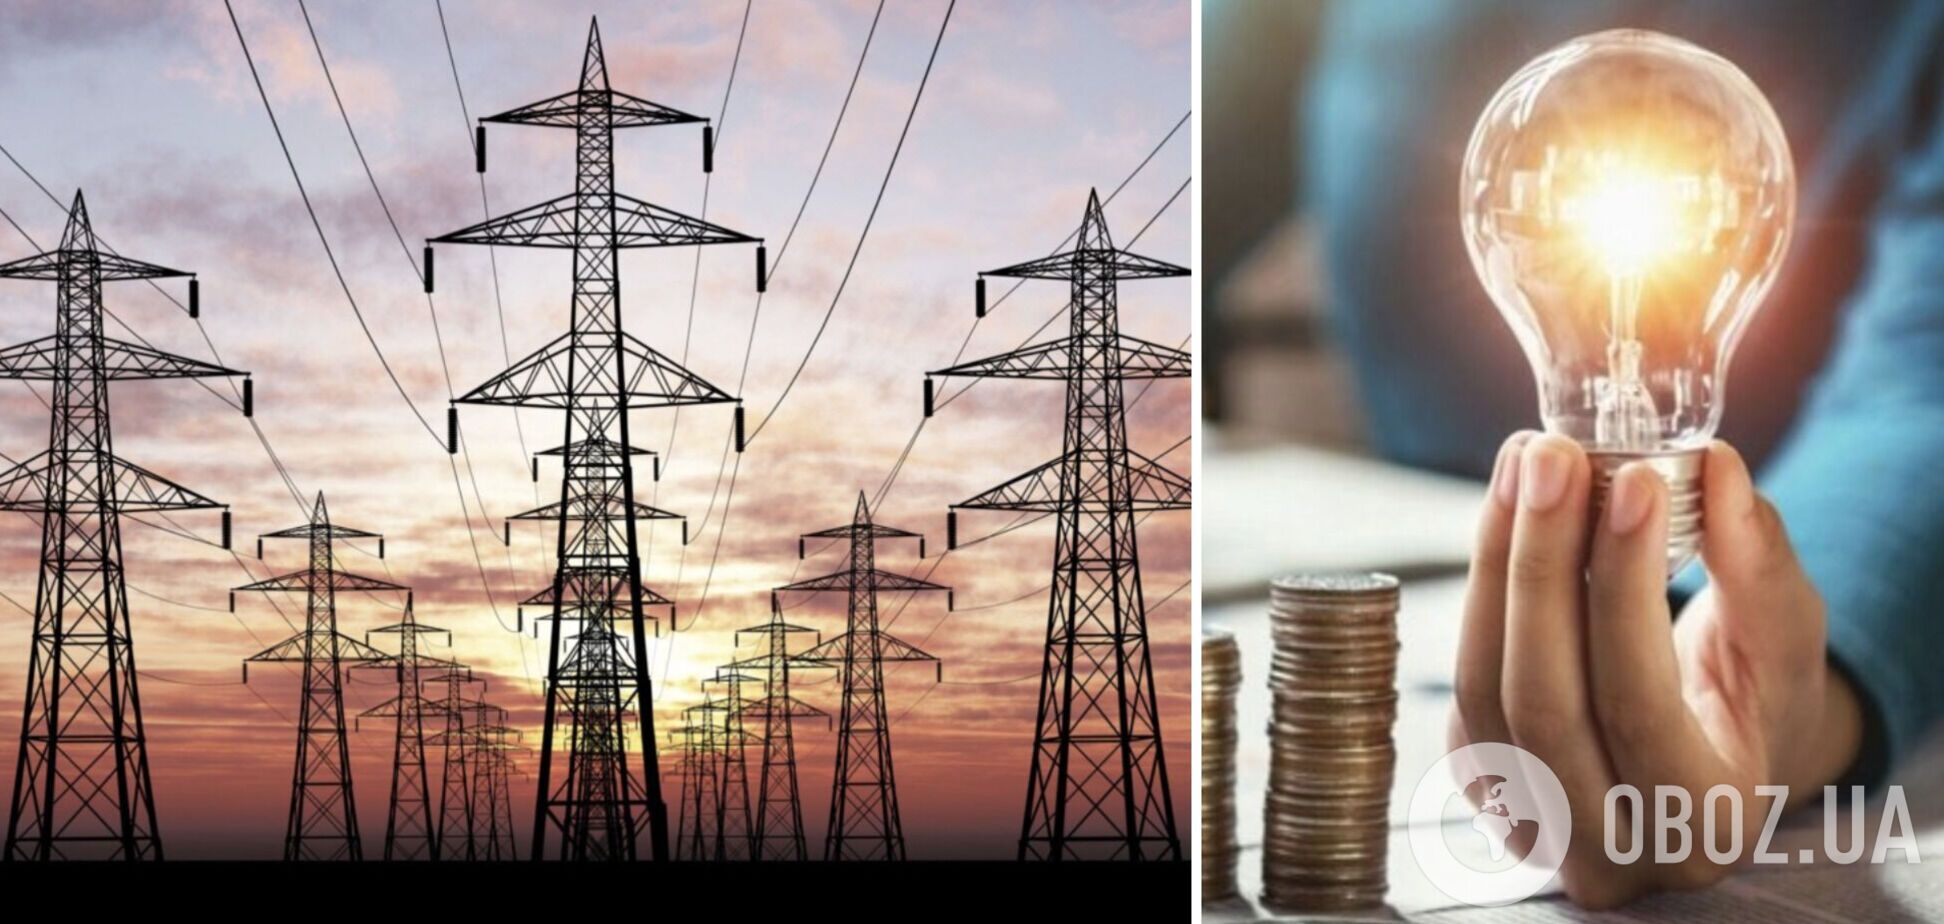 Цены на электроэнергию в Восточной Европе в 2 раза выше, чем в Украине – ГП 'Оператор рынка'